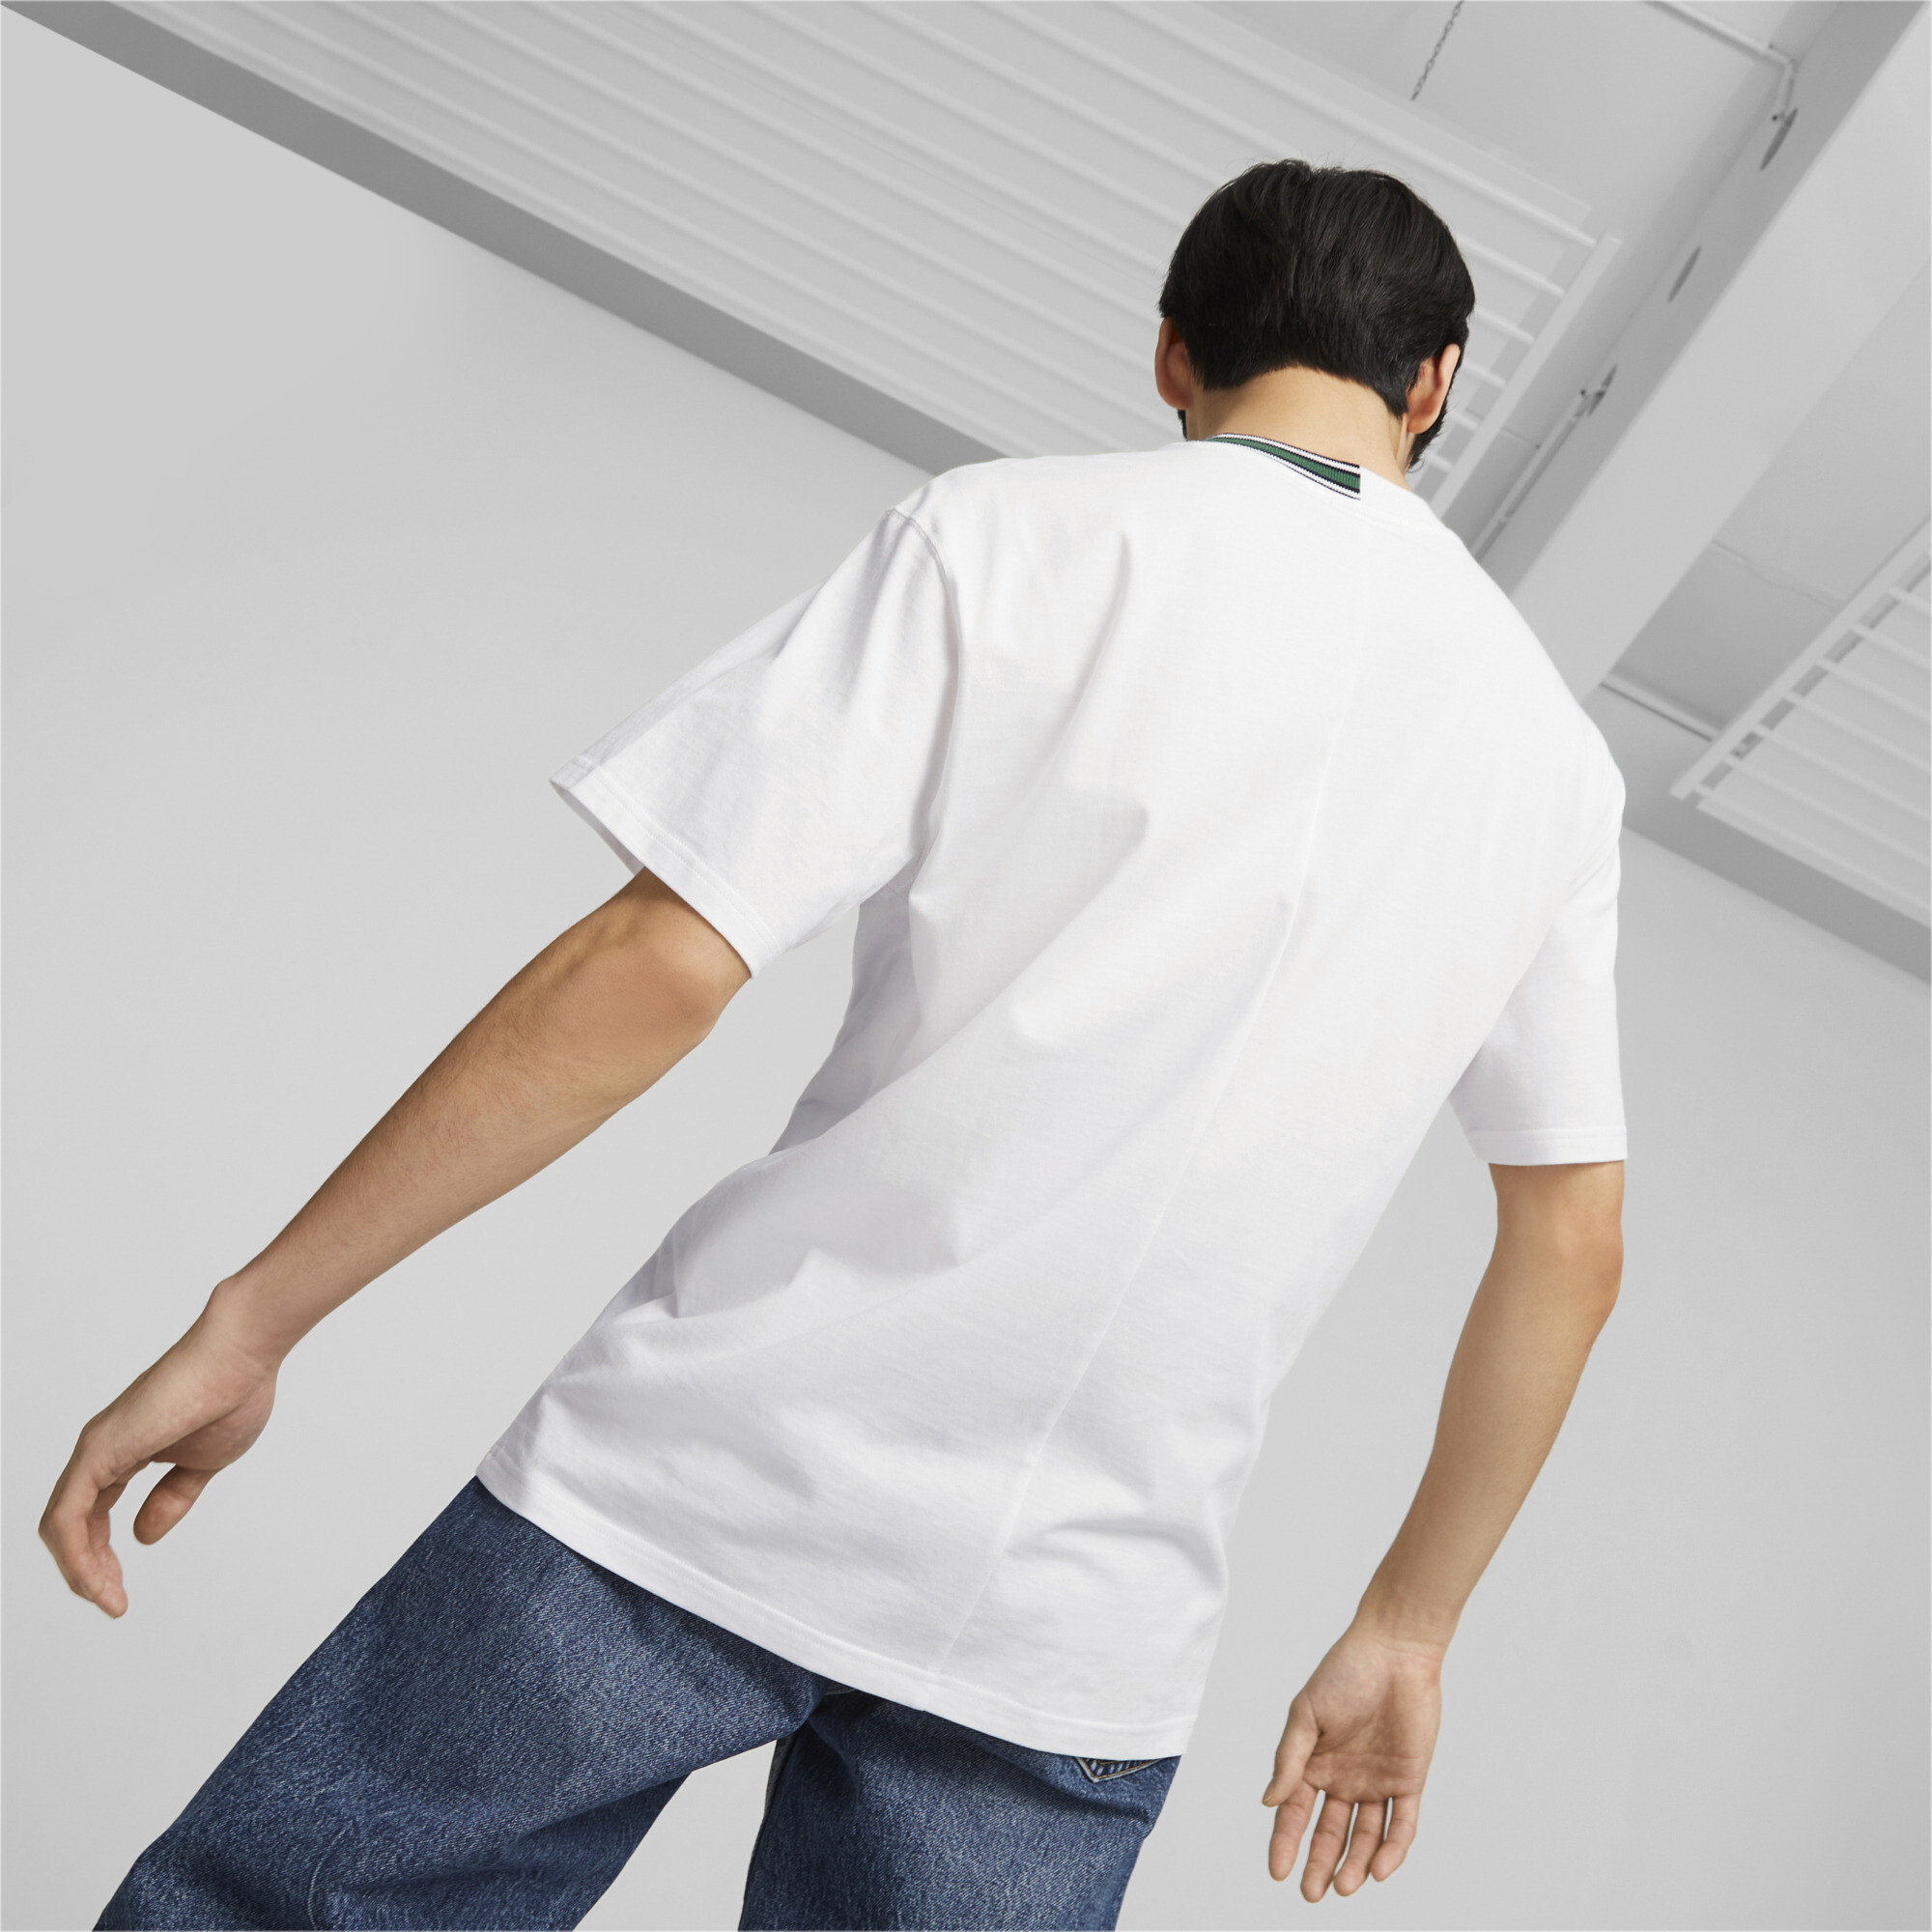 Men's Puma Classics T-Shirt, White, Size XXL, Lifestyle